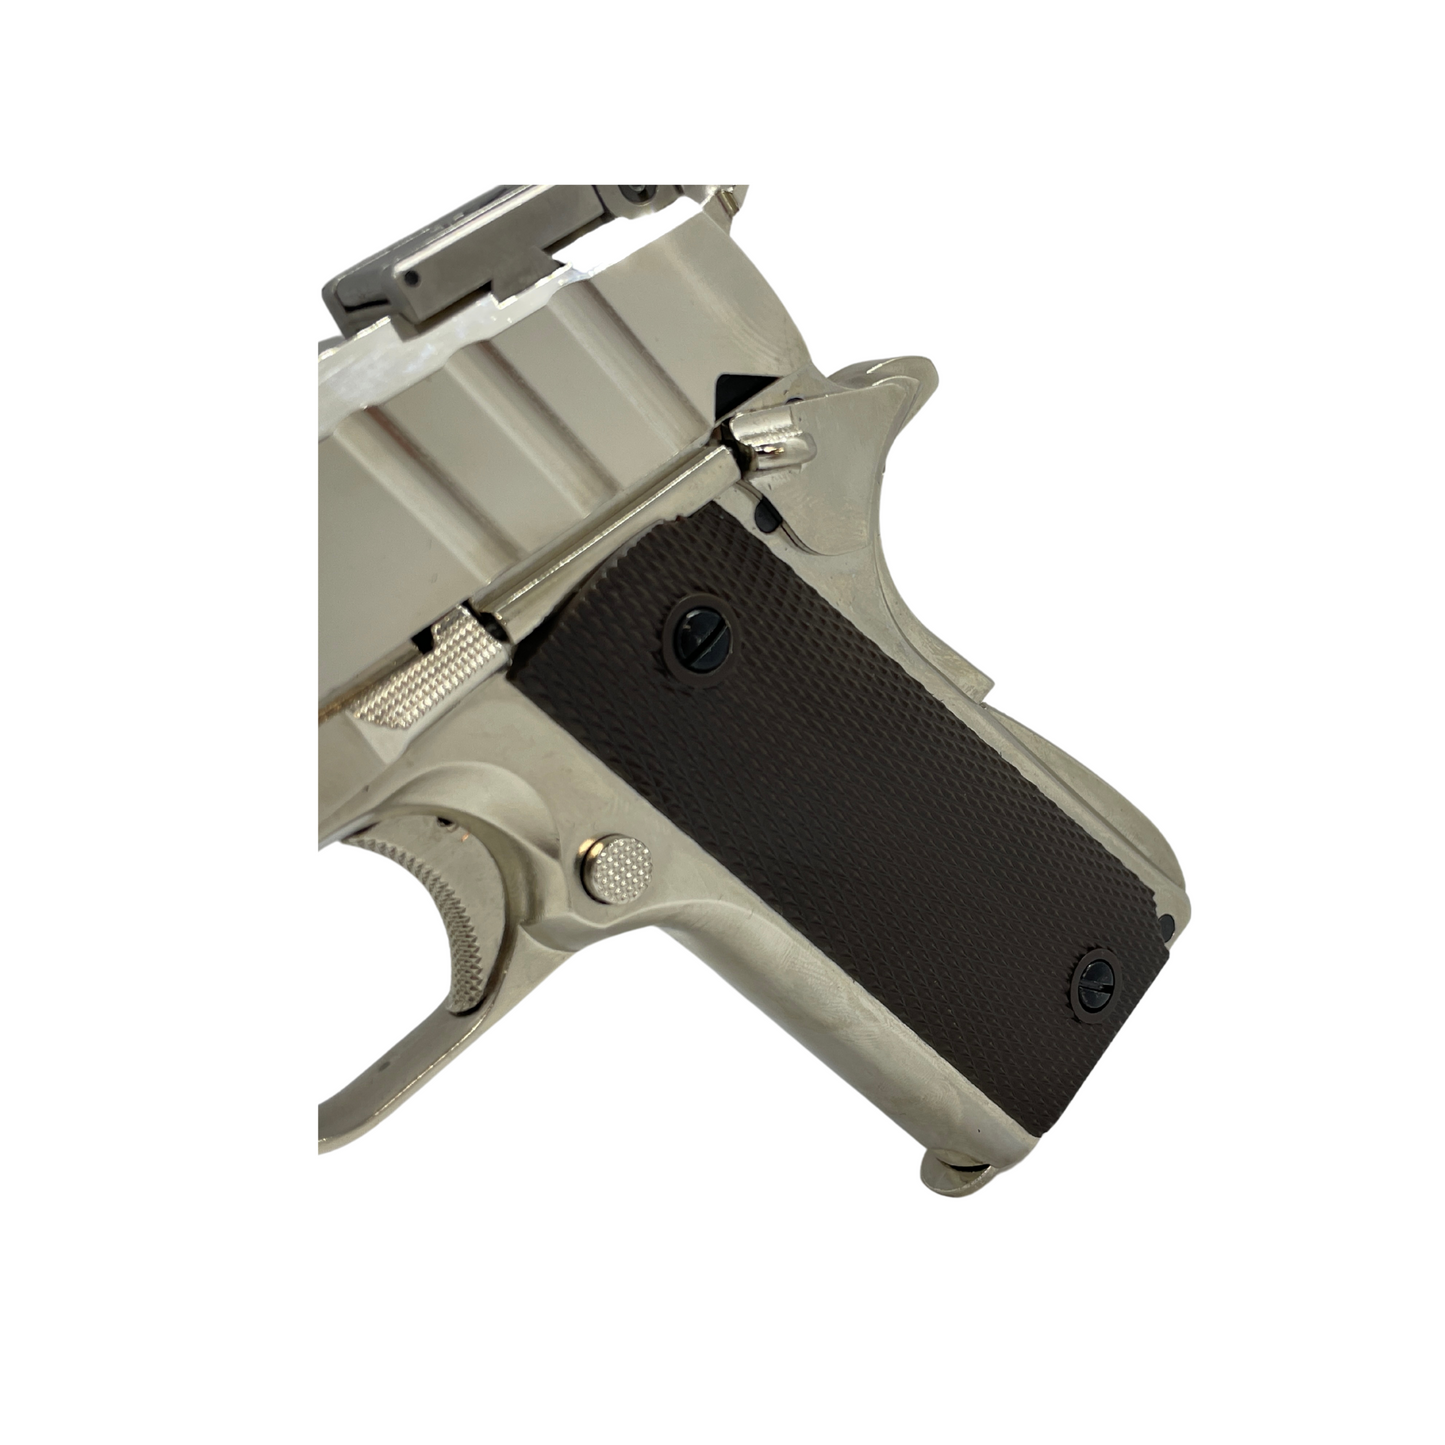 "Nickelback" 5.1 Custom 1911 GBU Pistol - Gel Blaster